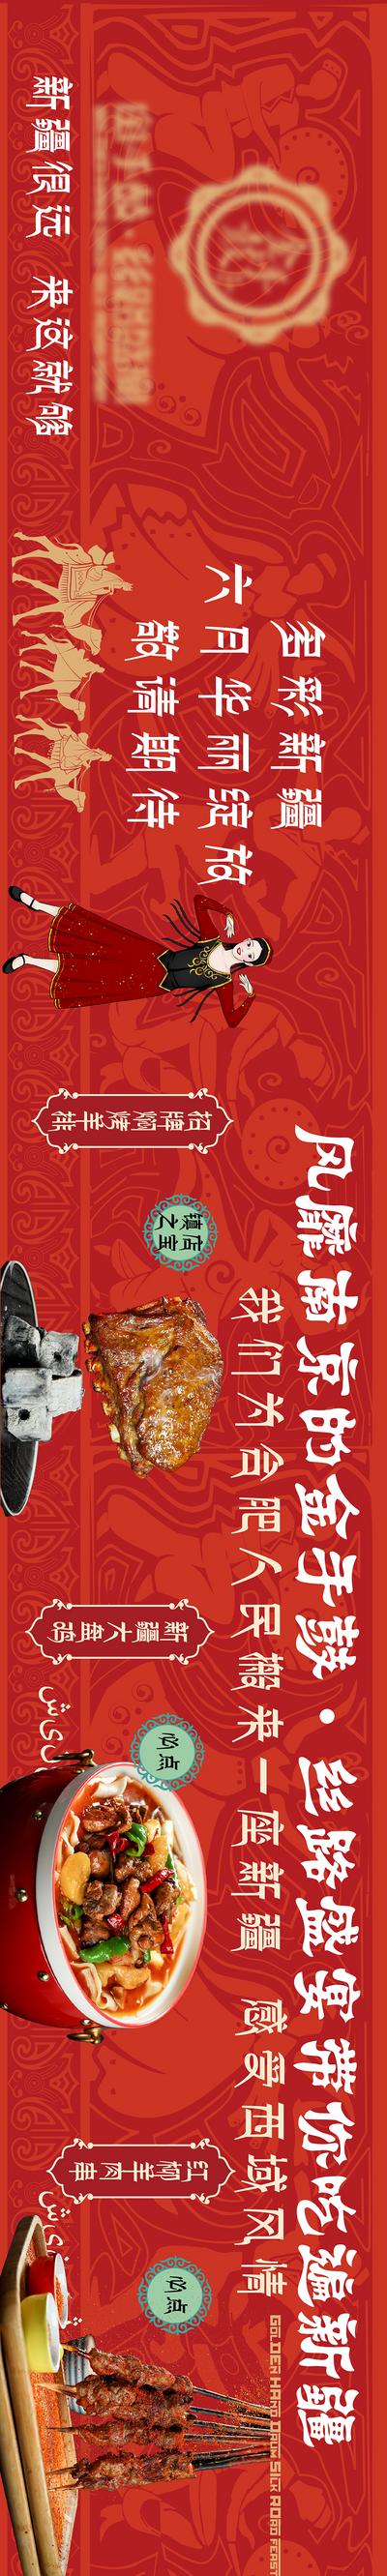 南门网 海报 长图 新疆菜 特色小吃 羊排 新疆舞 骆驼 手鼓 丝绸之路 民族风